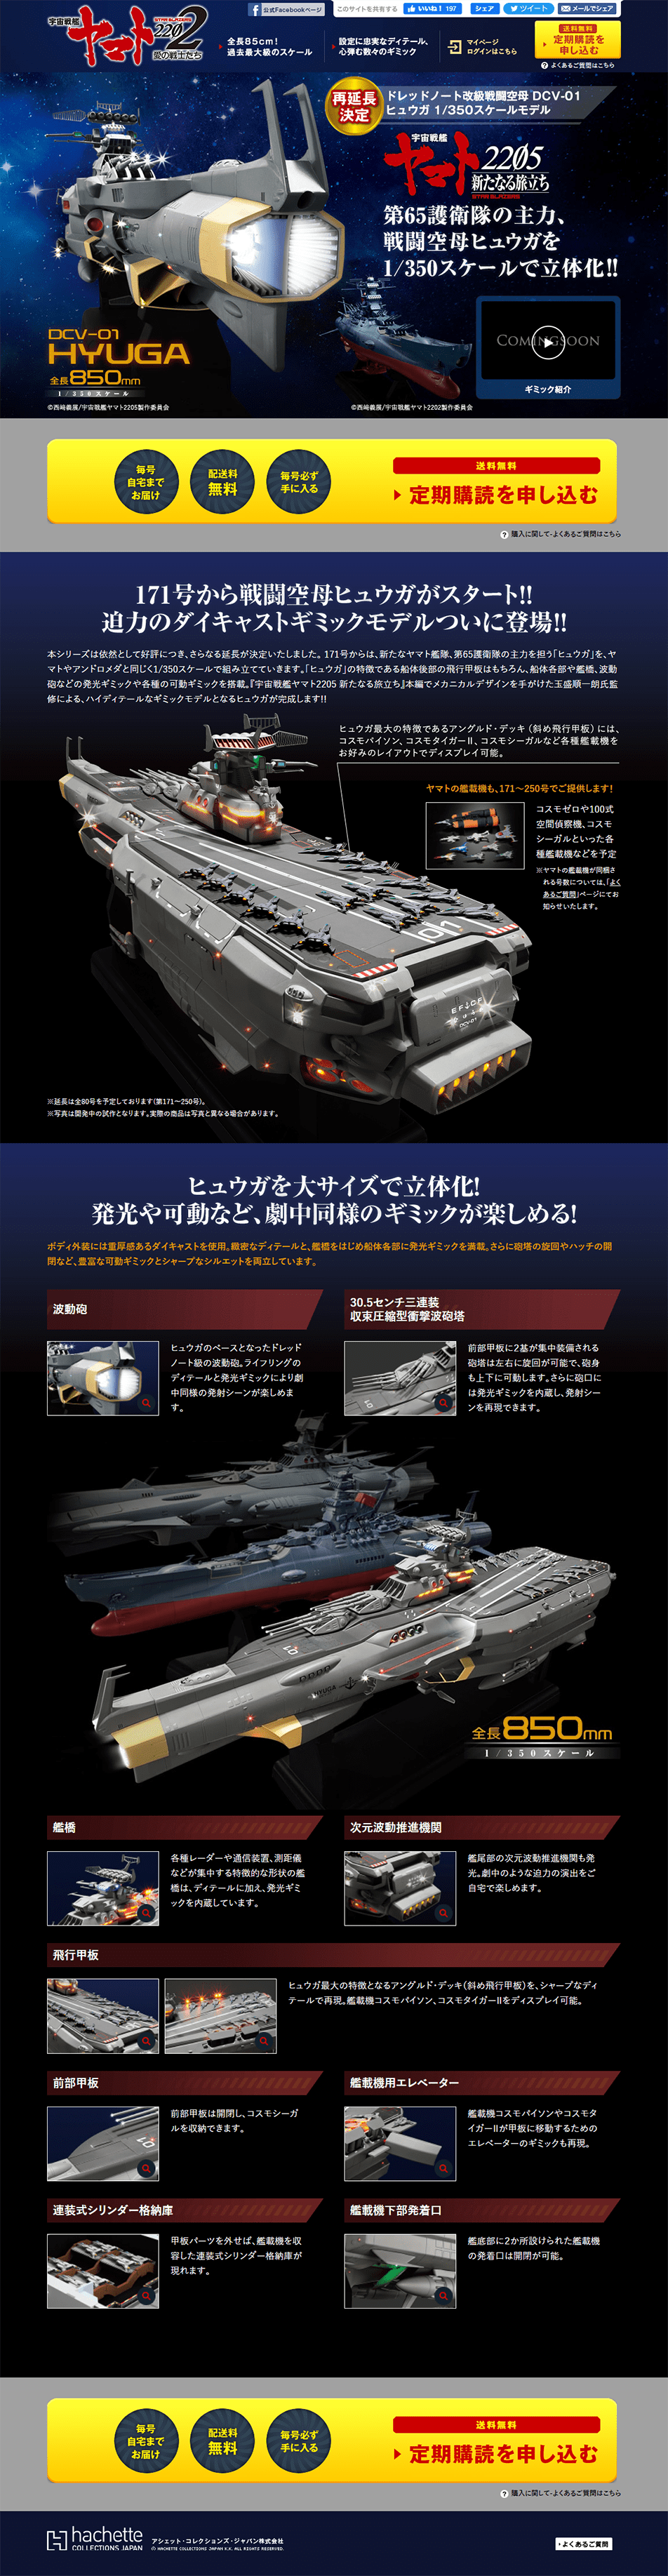 宇宙戦艦ヤマト ダイキャストギミックモデルをつくる_pc_1